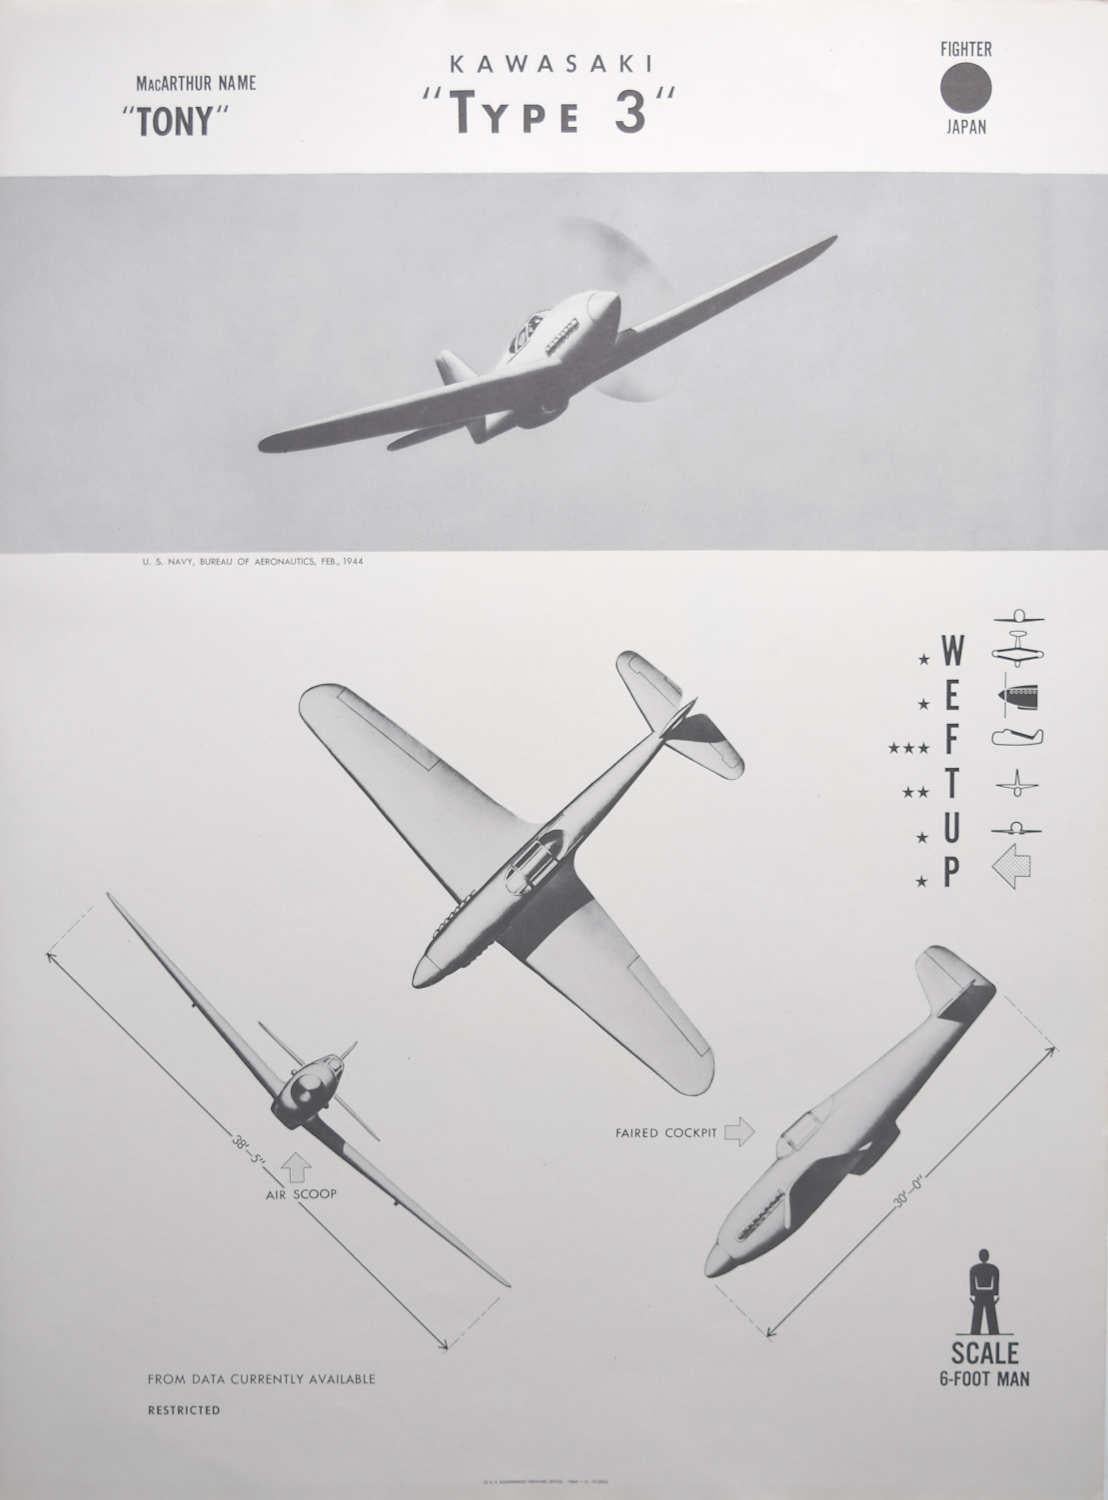 Affiche d'identification d'avion de chasseur japonais Kawasaki « Type 3 » de 1943 de la Seconde Guerre mondiale - Print de Unknown